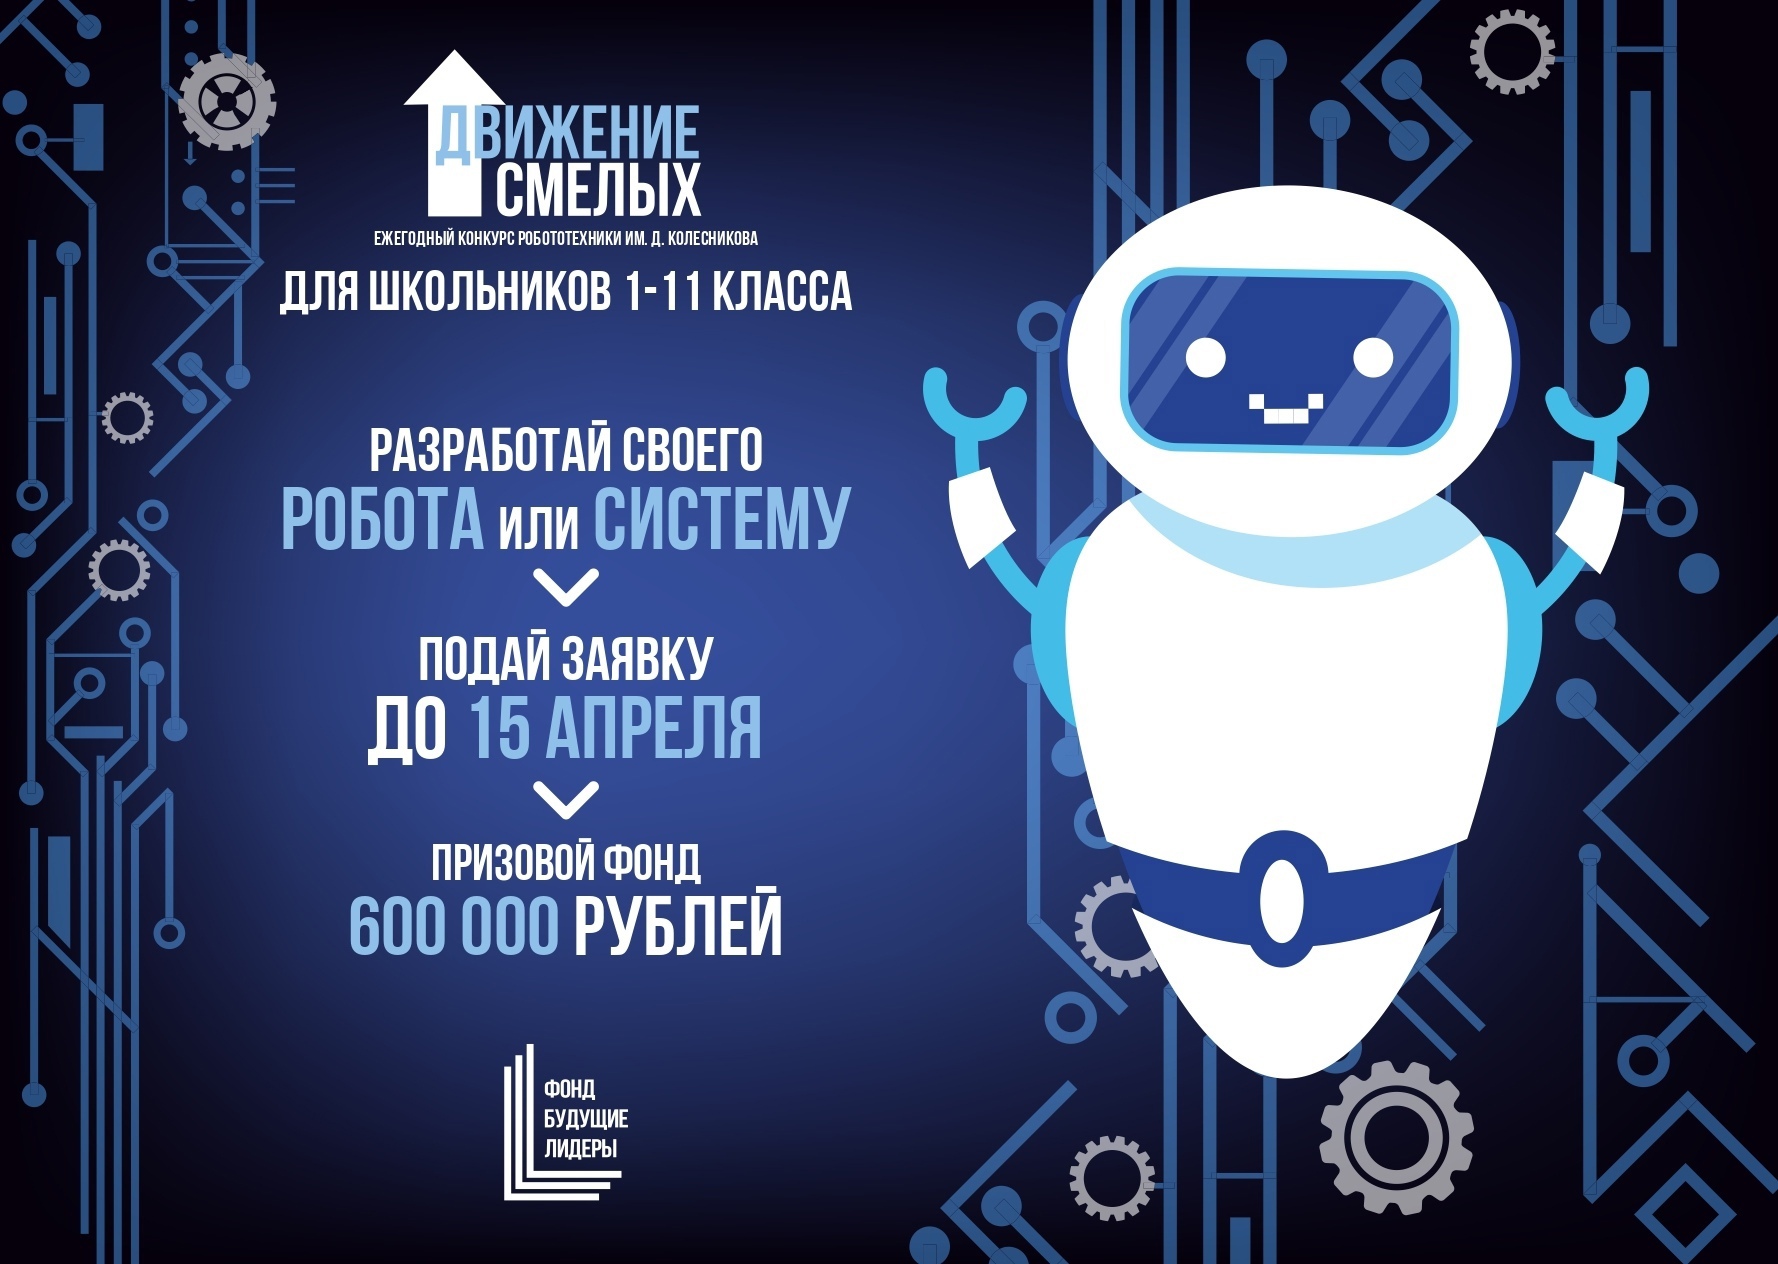 Прими участие в конкурсе и выиграй 600 000 рублей!